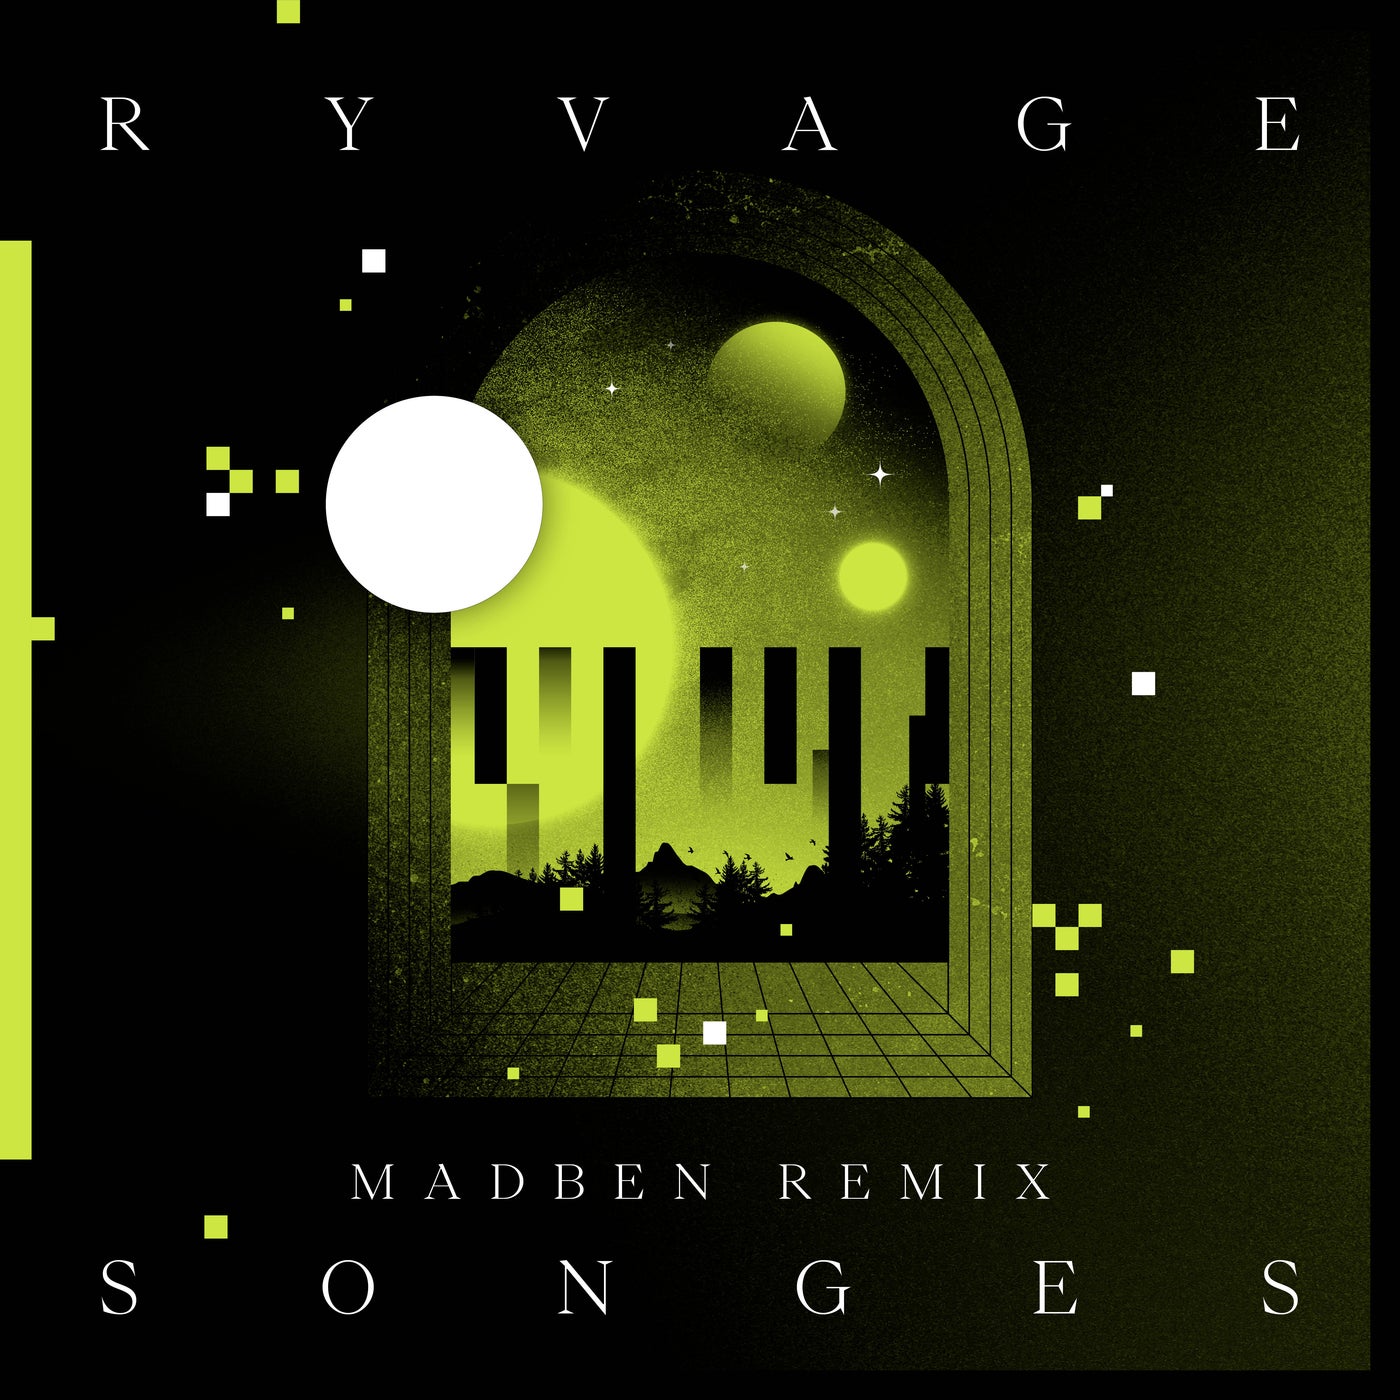 Songes (MadBen Remix)